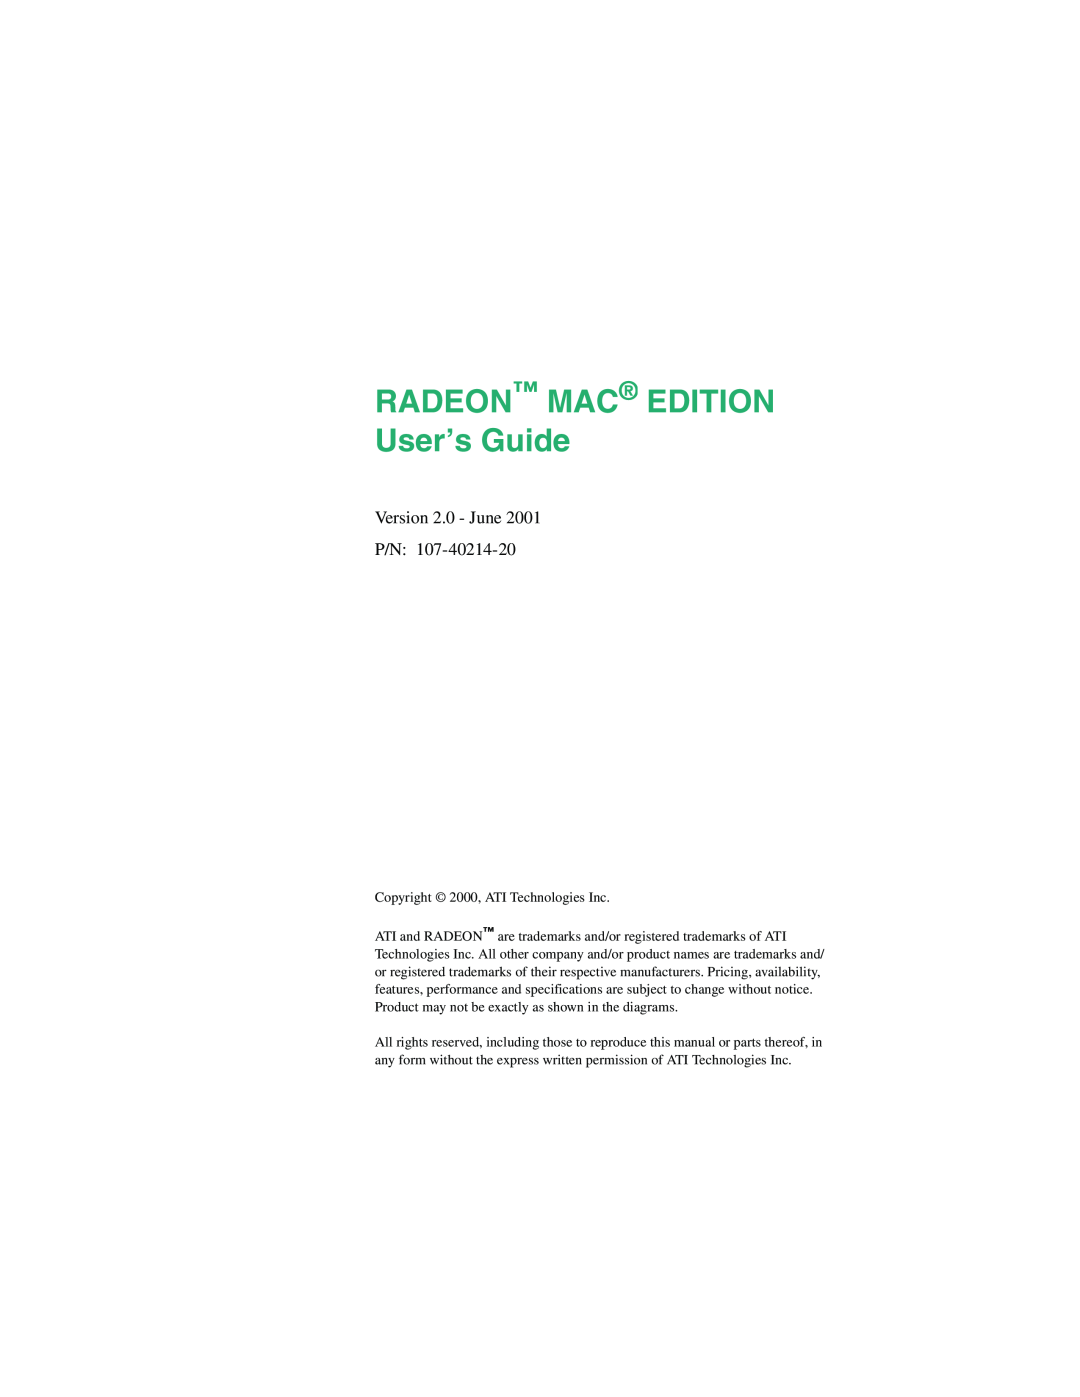 ATI Technologies 107-40214-20 manual RADEON MAC EDITION User’s Guide, Version 2.0 - June P/N 